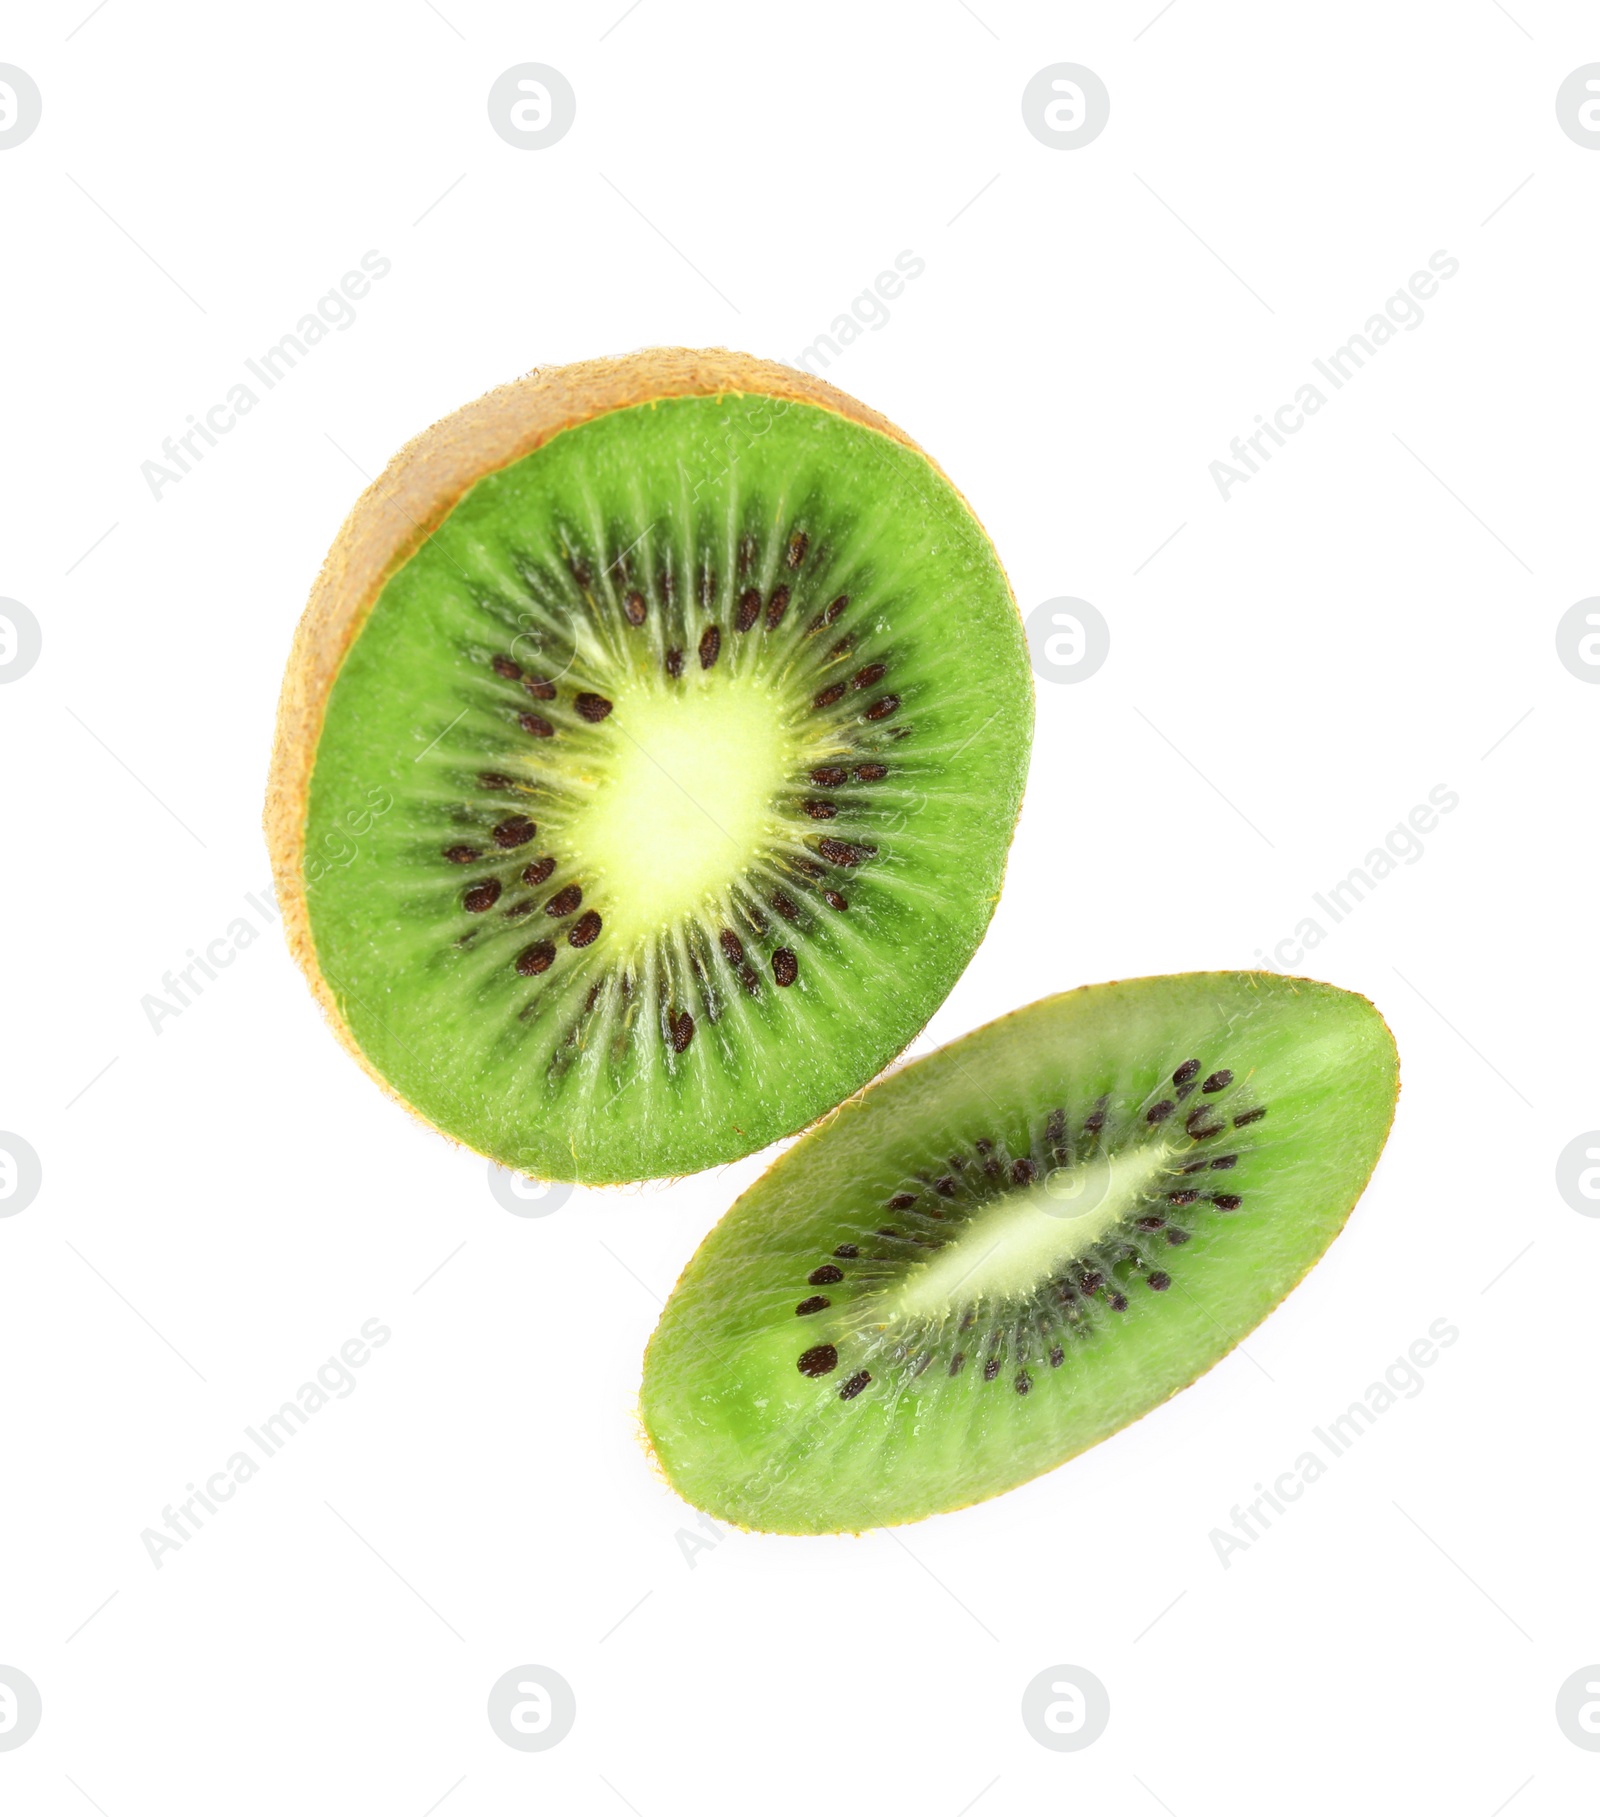 Photo of Cut fresh ripe kiwi on white background, top view